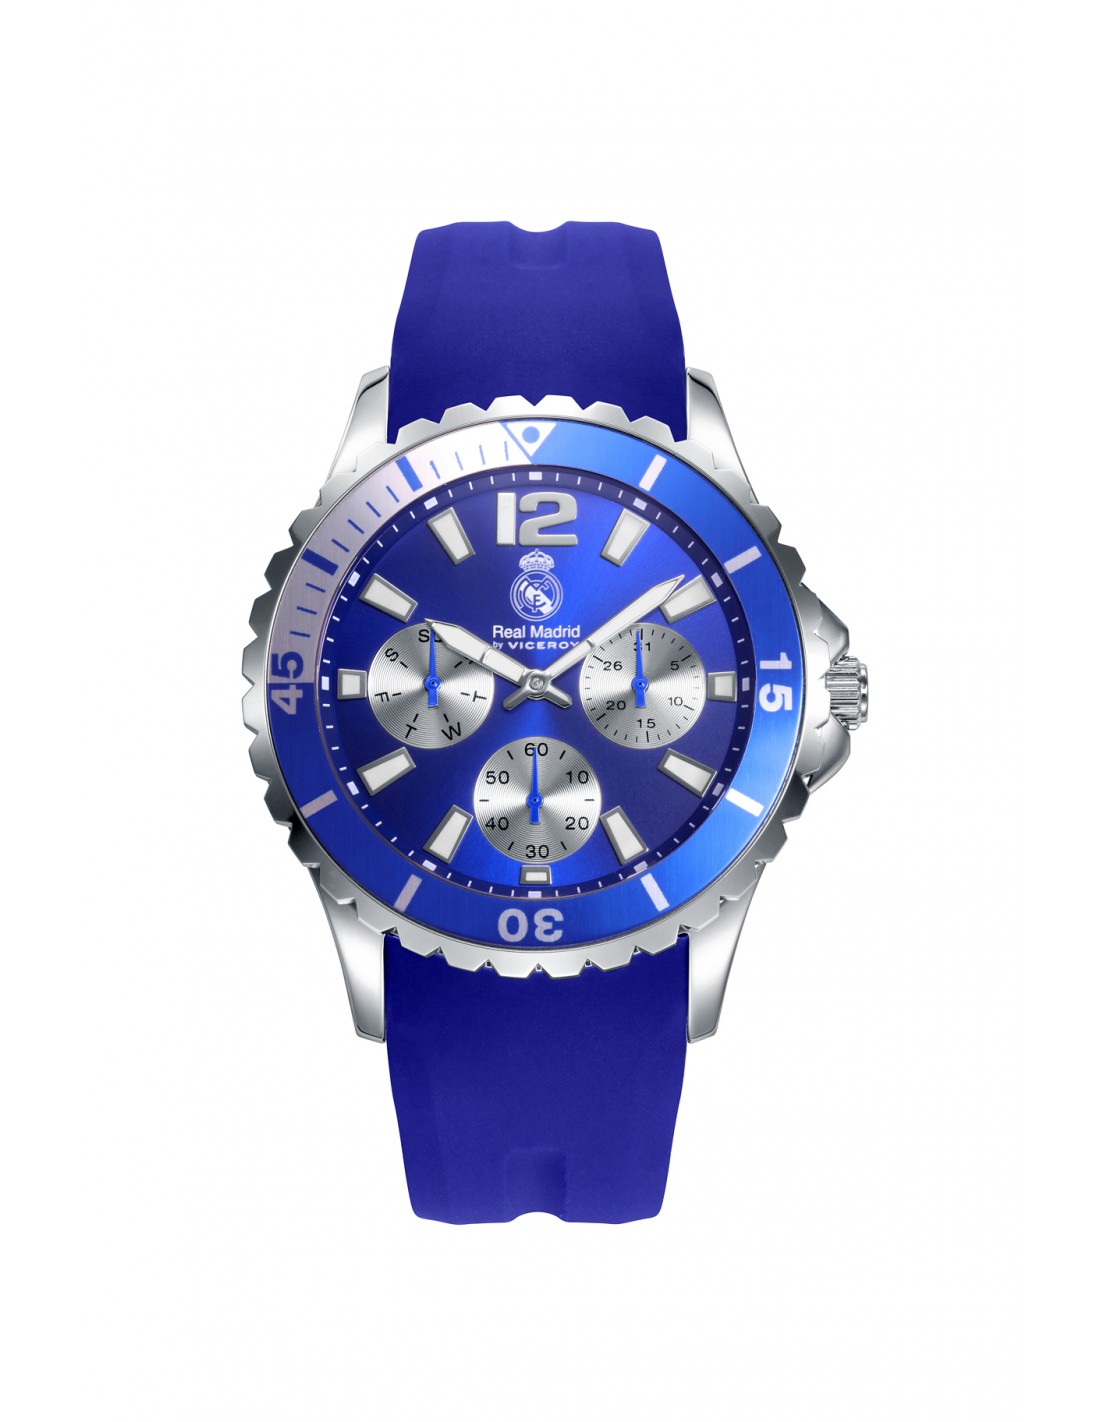 Reloj comunion Viceroy digital con altavoz de regalo - 401116-00